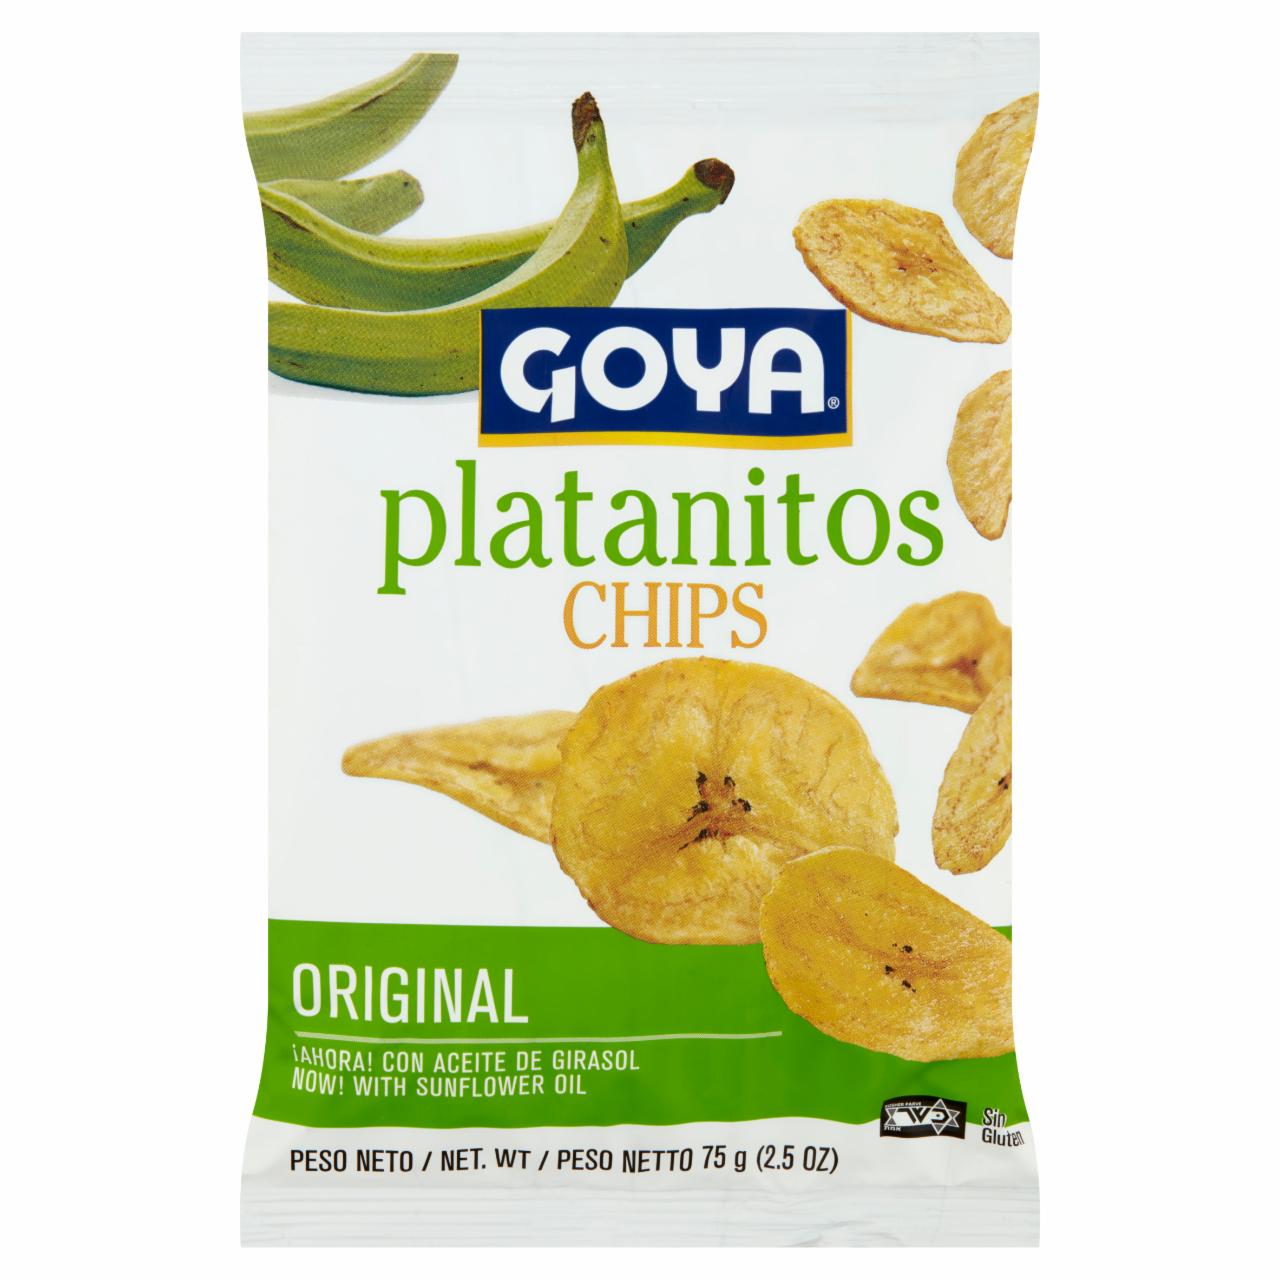 Képek - Goya sózott zöldbanán chips 75 g